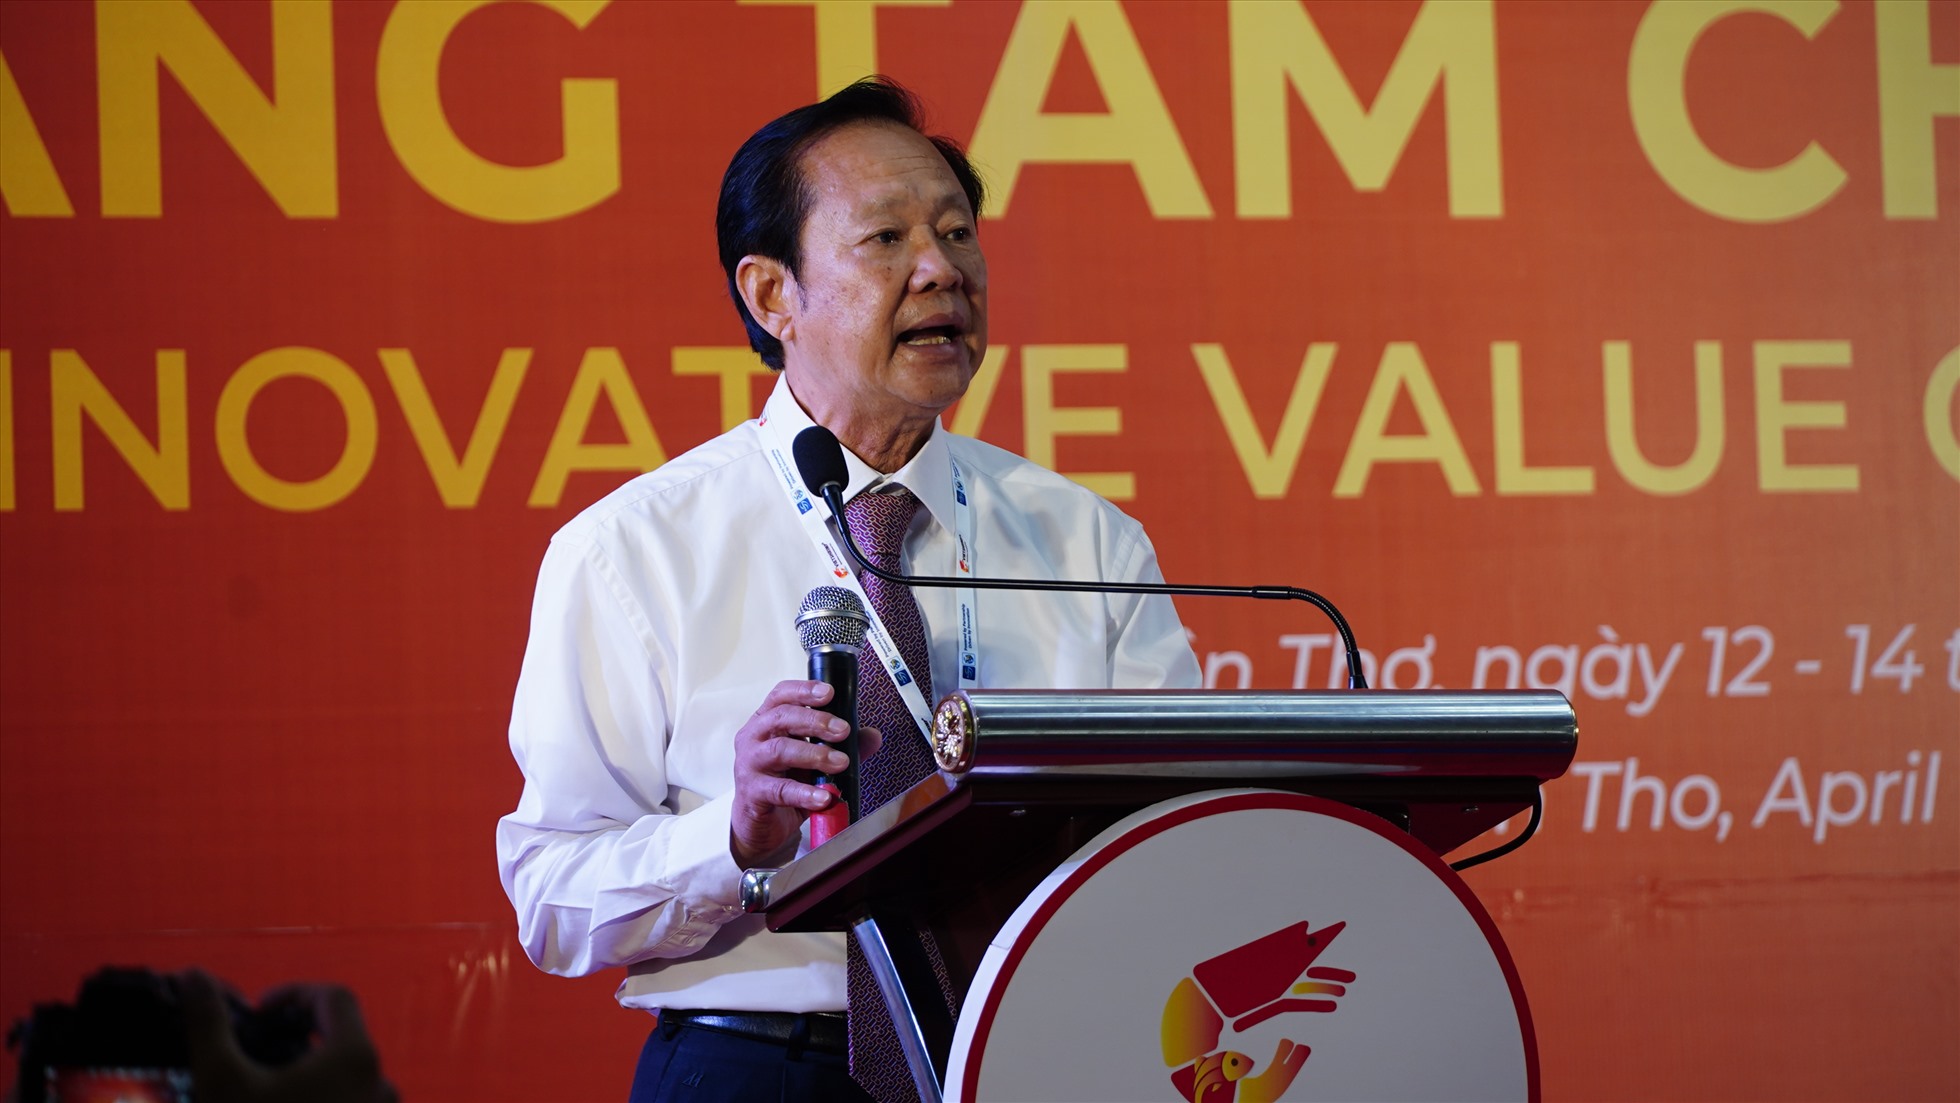 Ông Nguyễn Việt Thắng – Chủ tịch Hội Nghề cá Việt Nam phát biểu tại buổi triển lãm. Ảnh: Tạ Quang